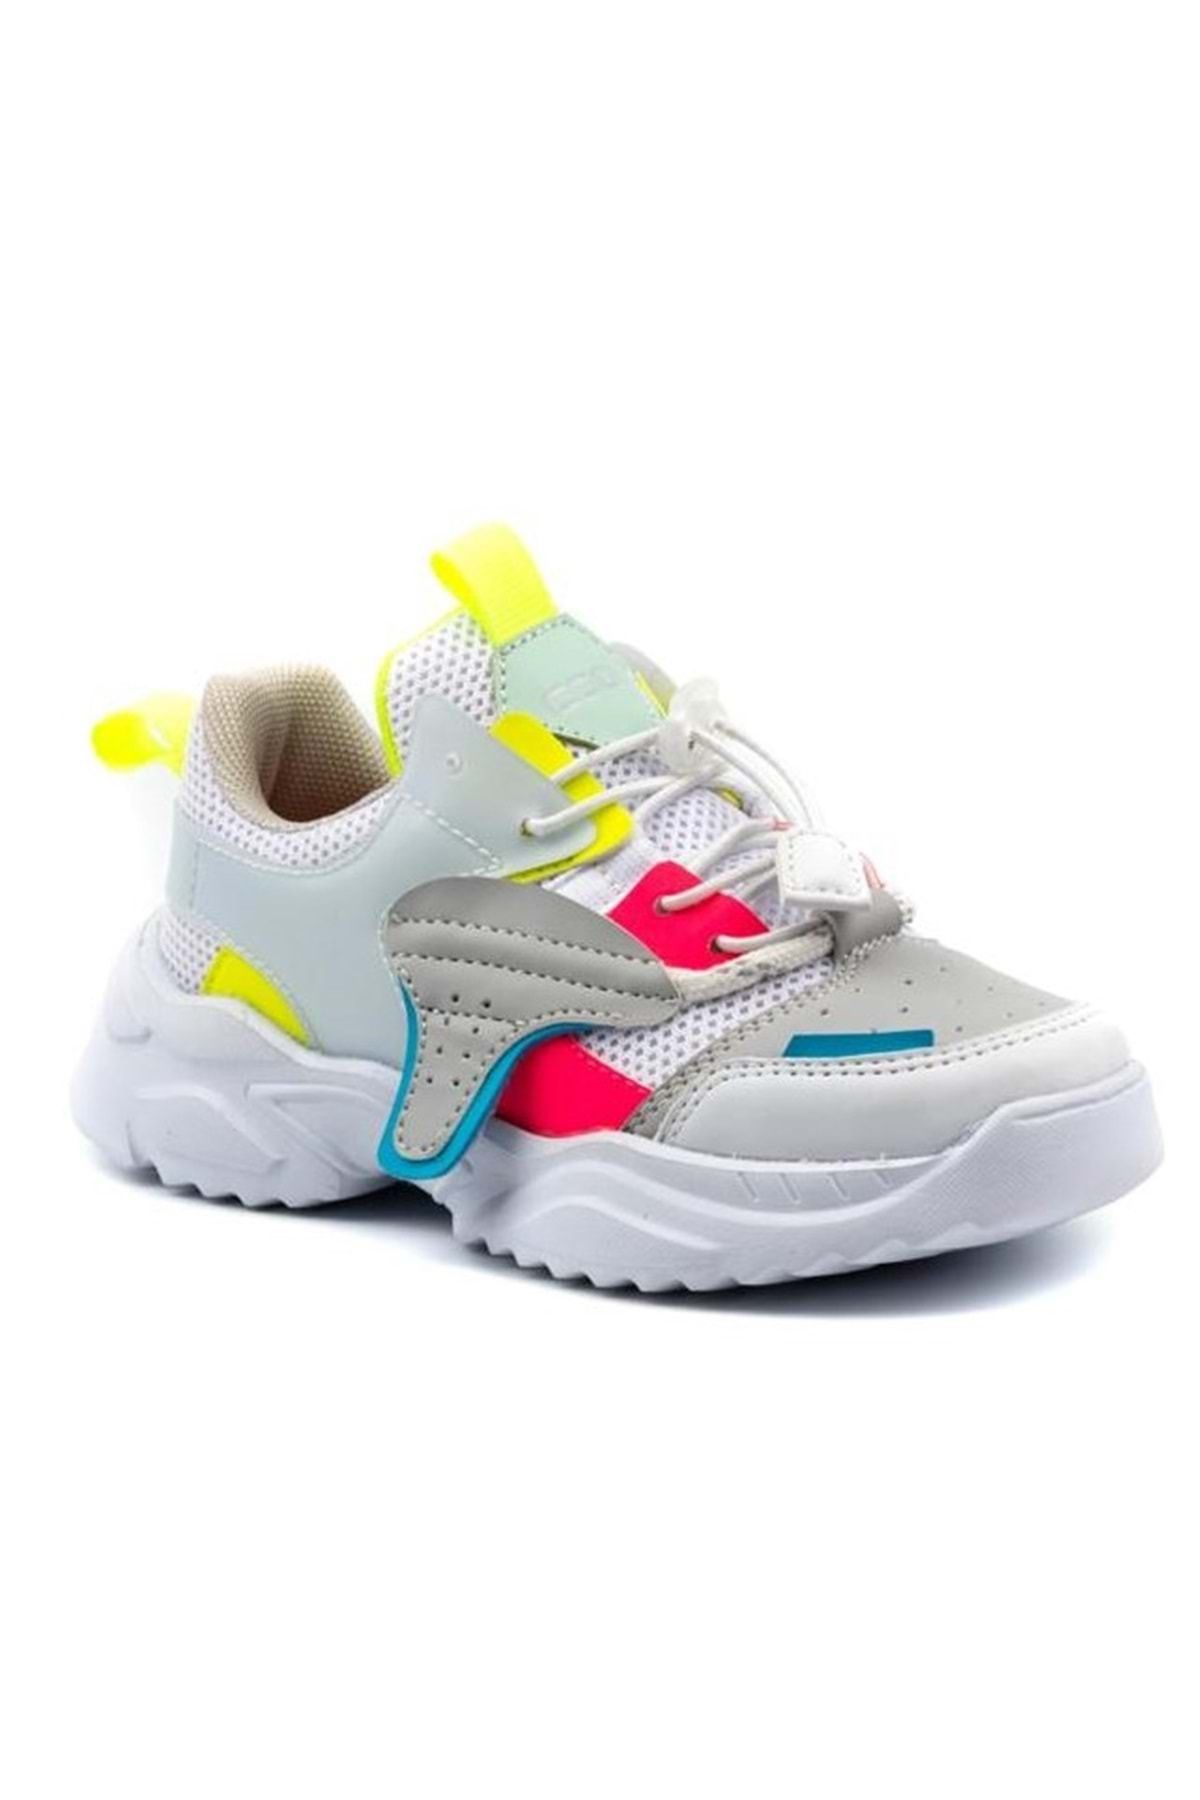 KOCAMANLAR Cool Y3 Sneaker Ortapedik Çocuk Spor Ayakkabı Beyaz-pembe